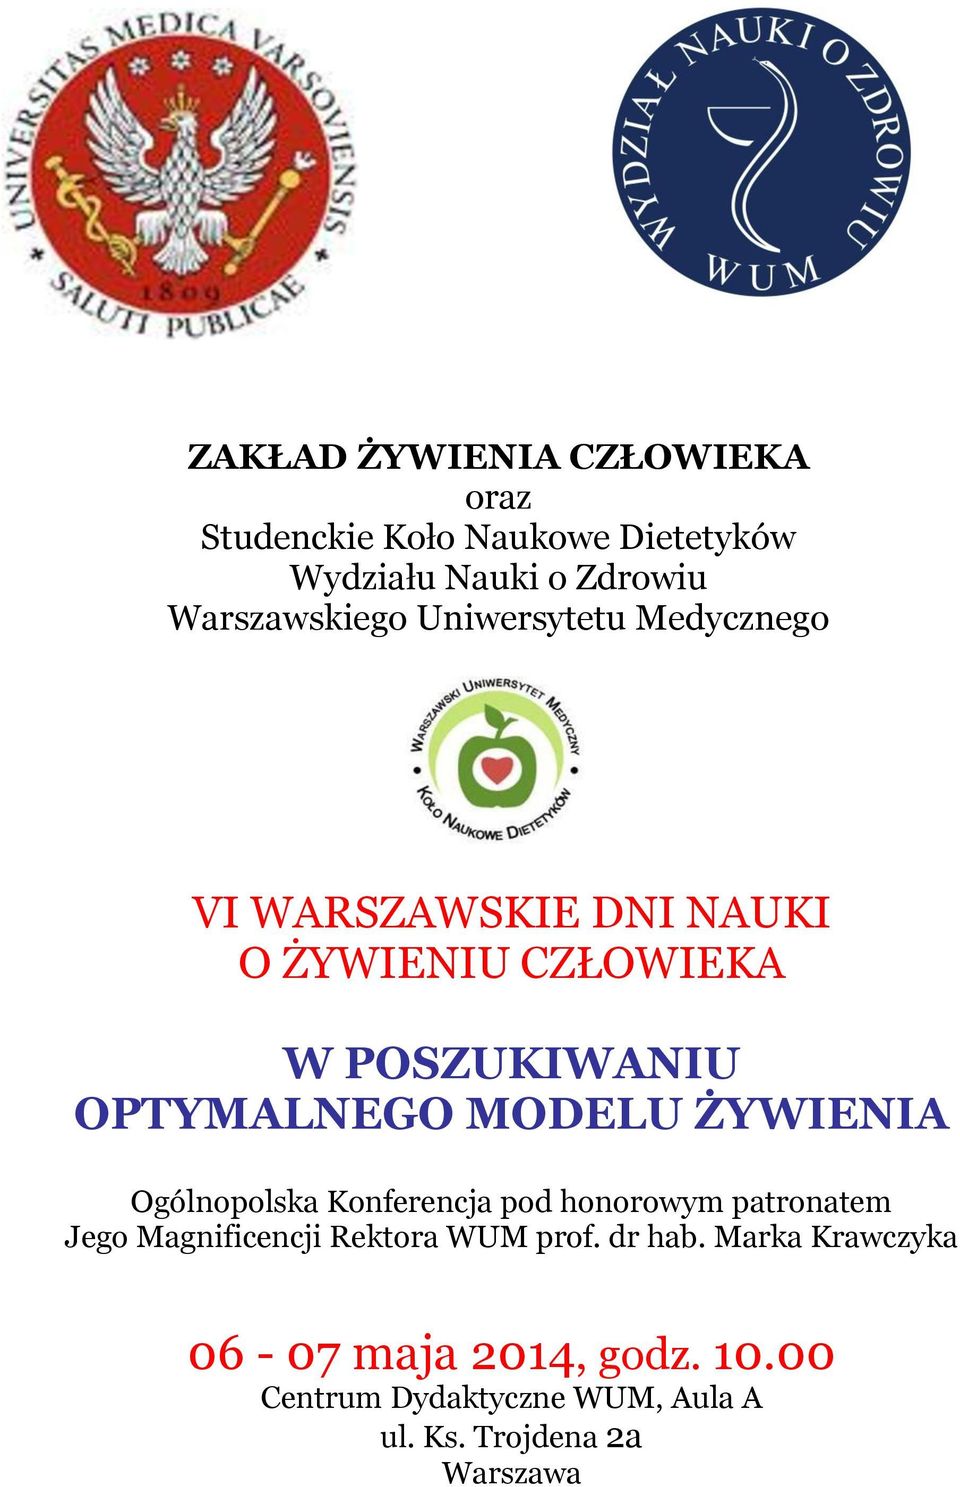 ŻYWIENIA Ogólnopolska Konferencja pod honorowym patronatem Jego Magnificencji Rektora WUM prof. dr hab.